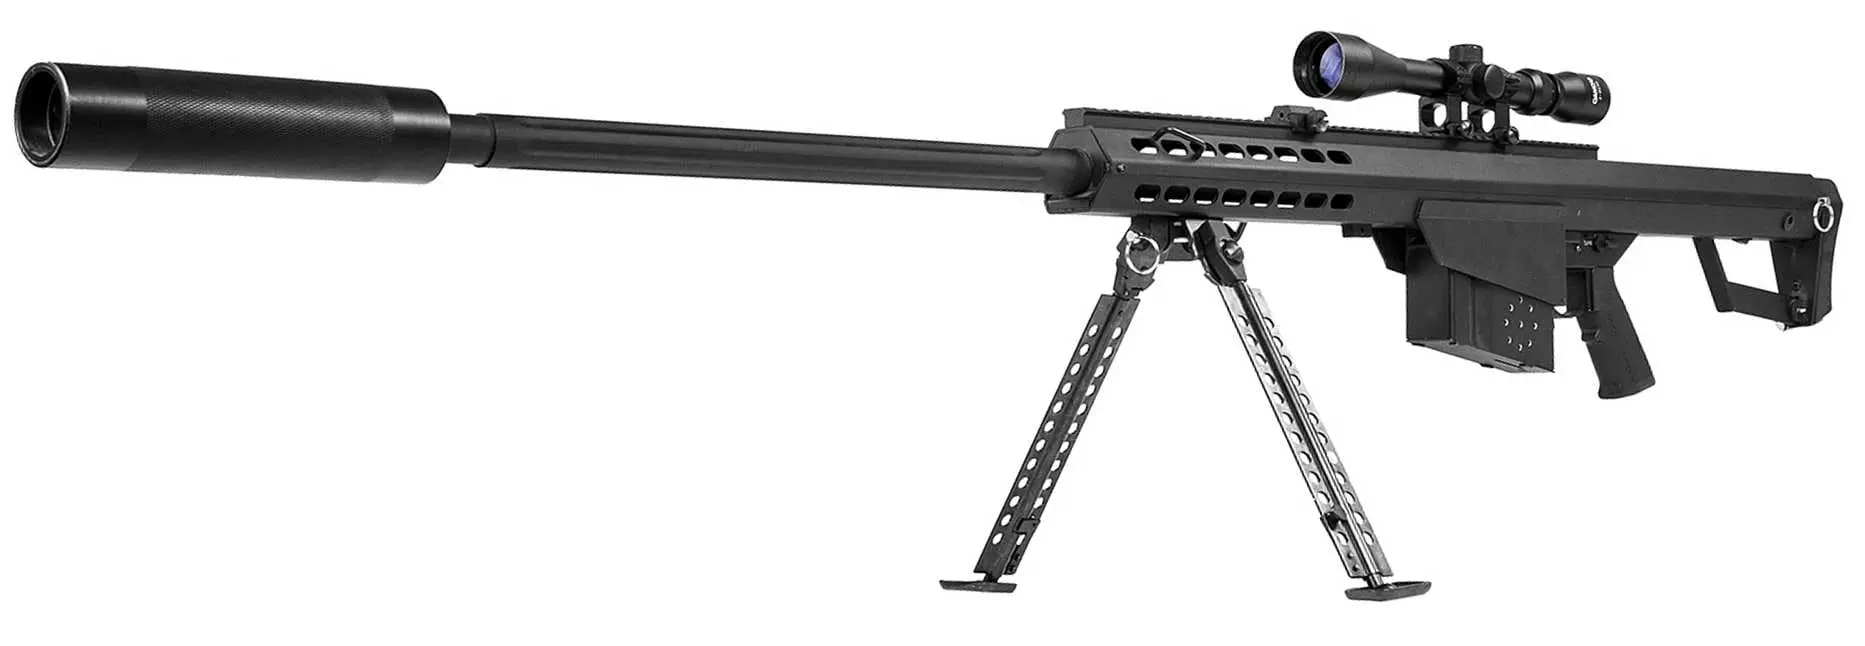 M82 barrett laser tag sniper gun front